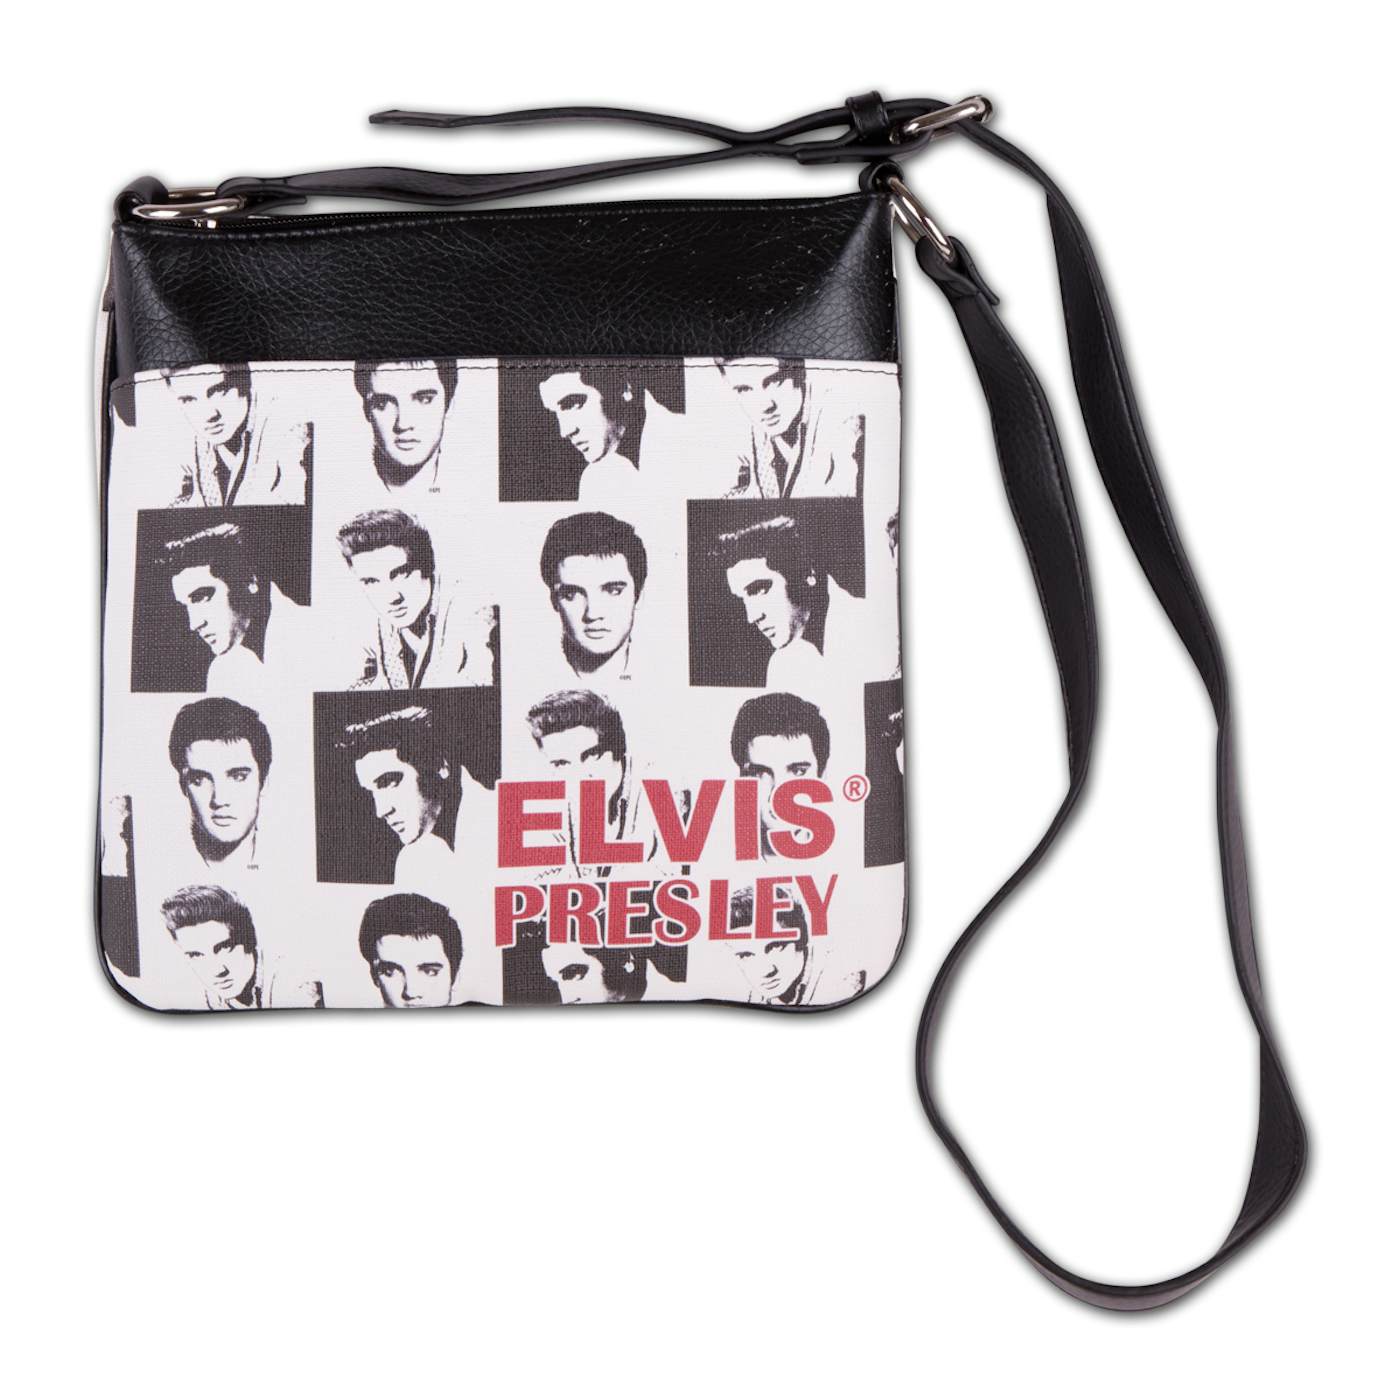 Elvis Presley - Collage Messenger Bag